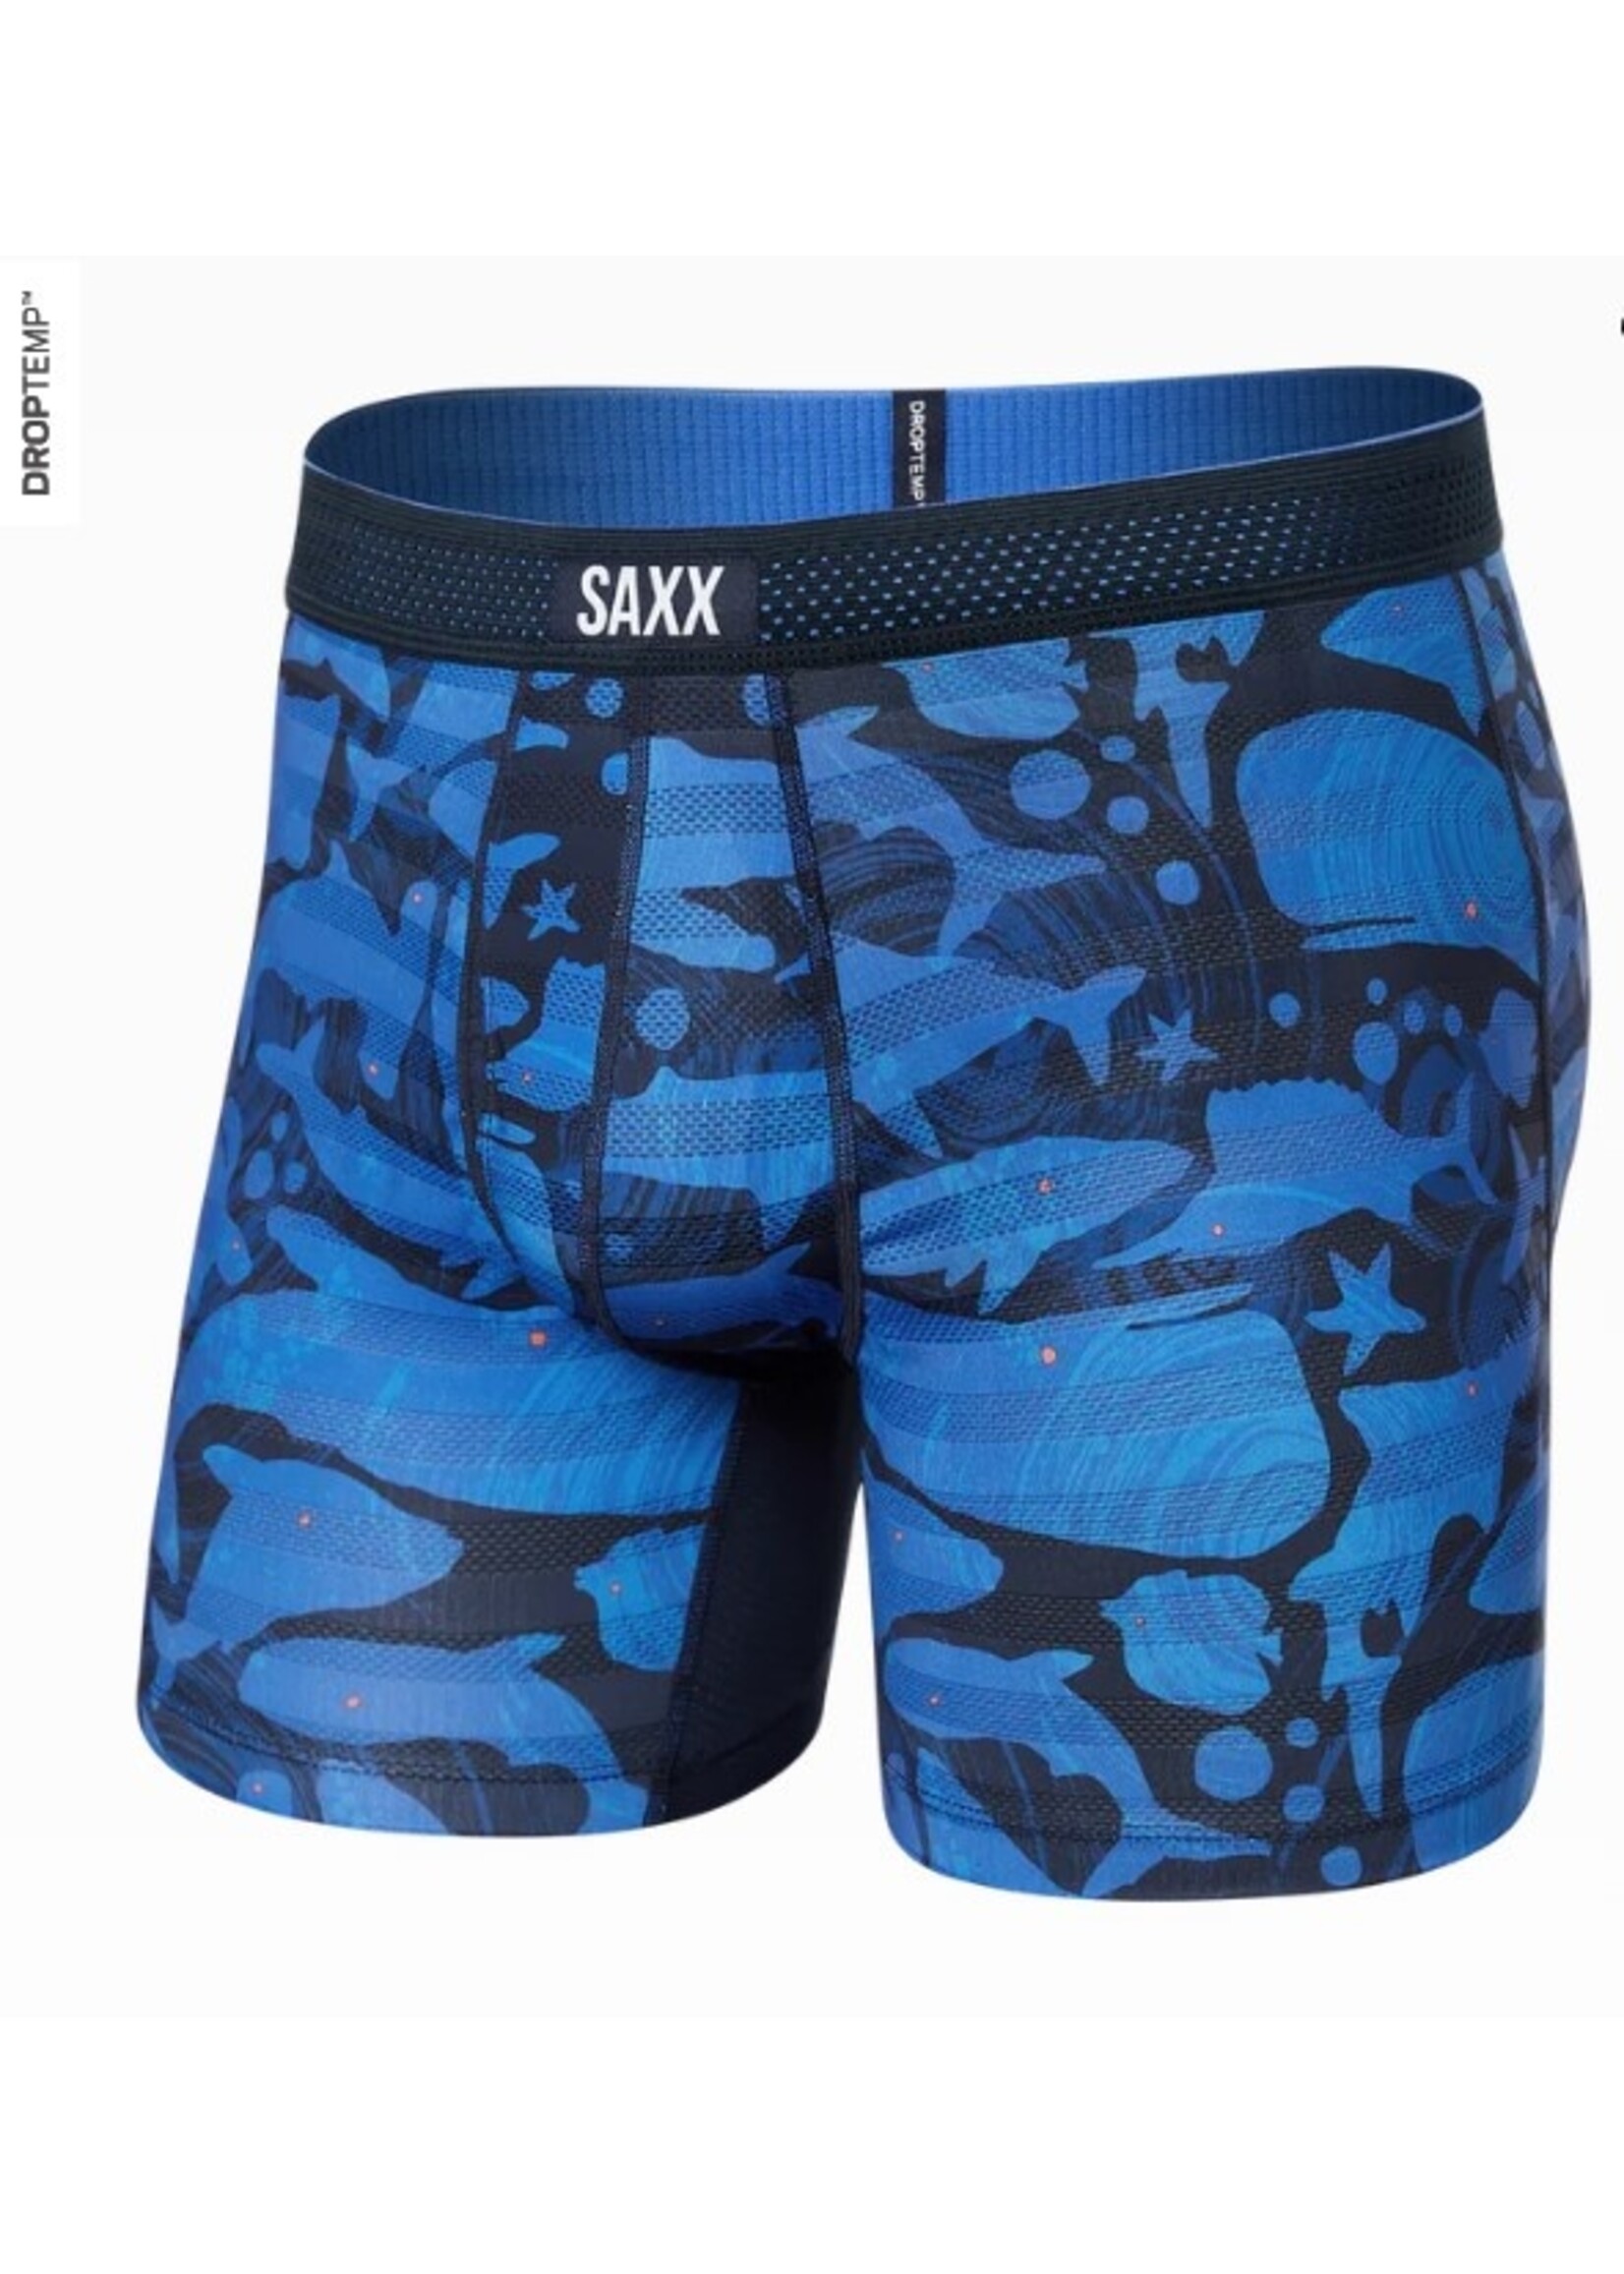 SAXX Hot Shot Boxer Brief - Our Little Secret Boutique Limited